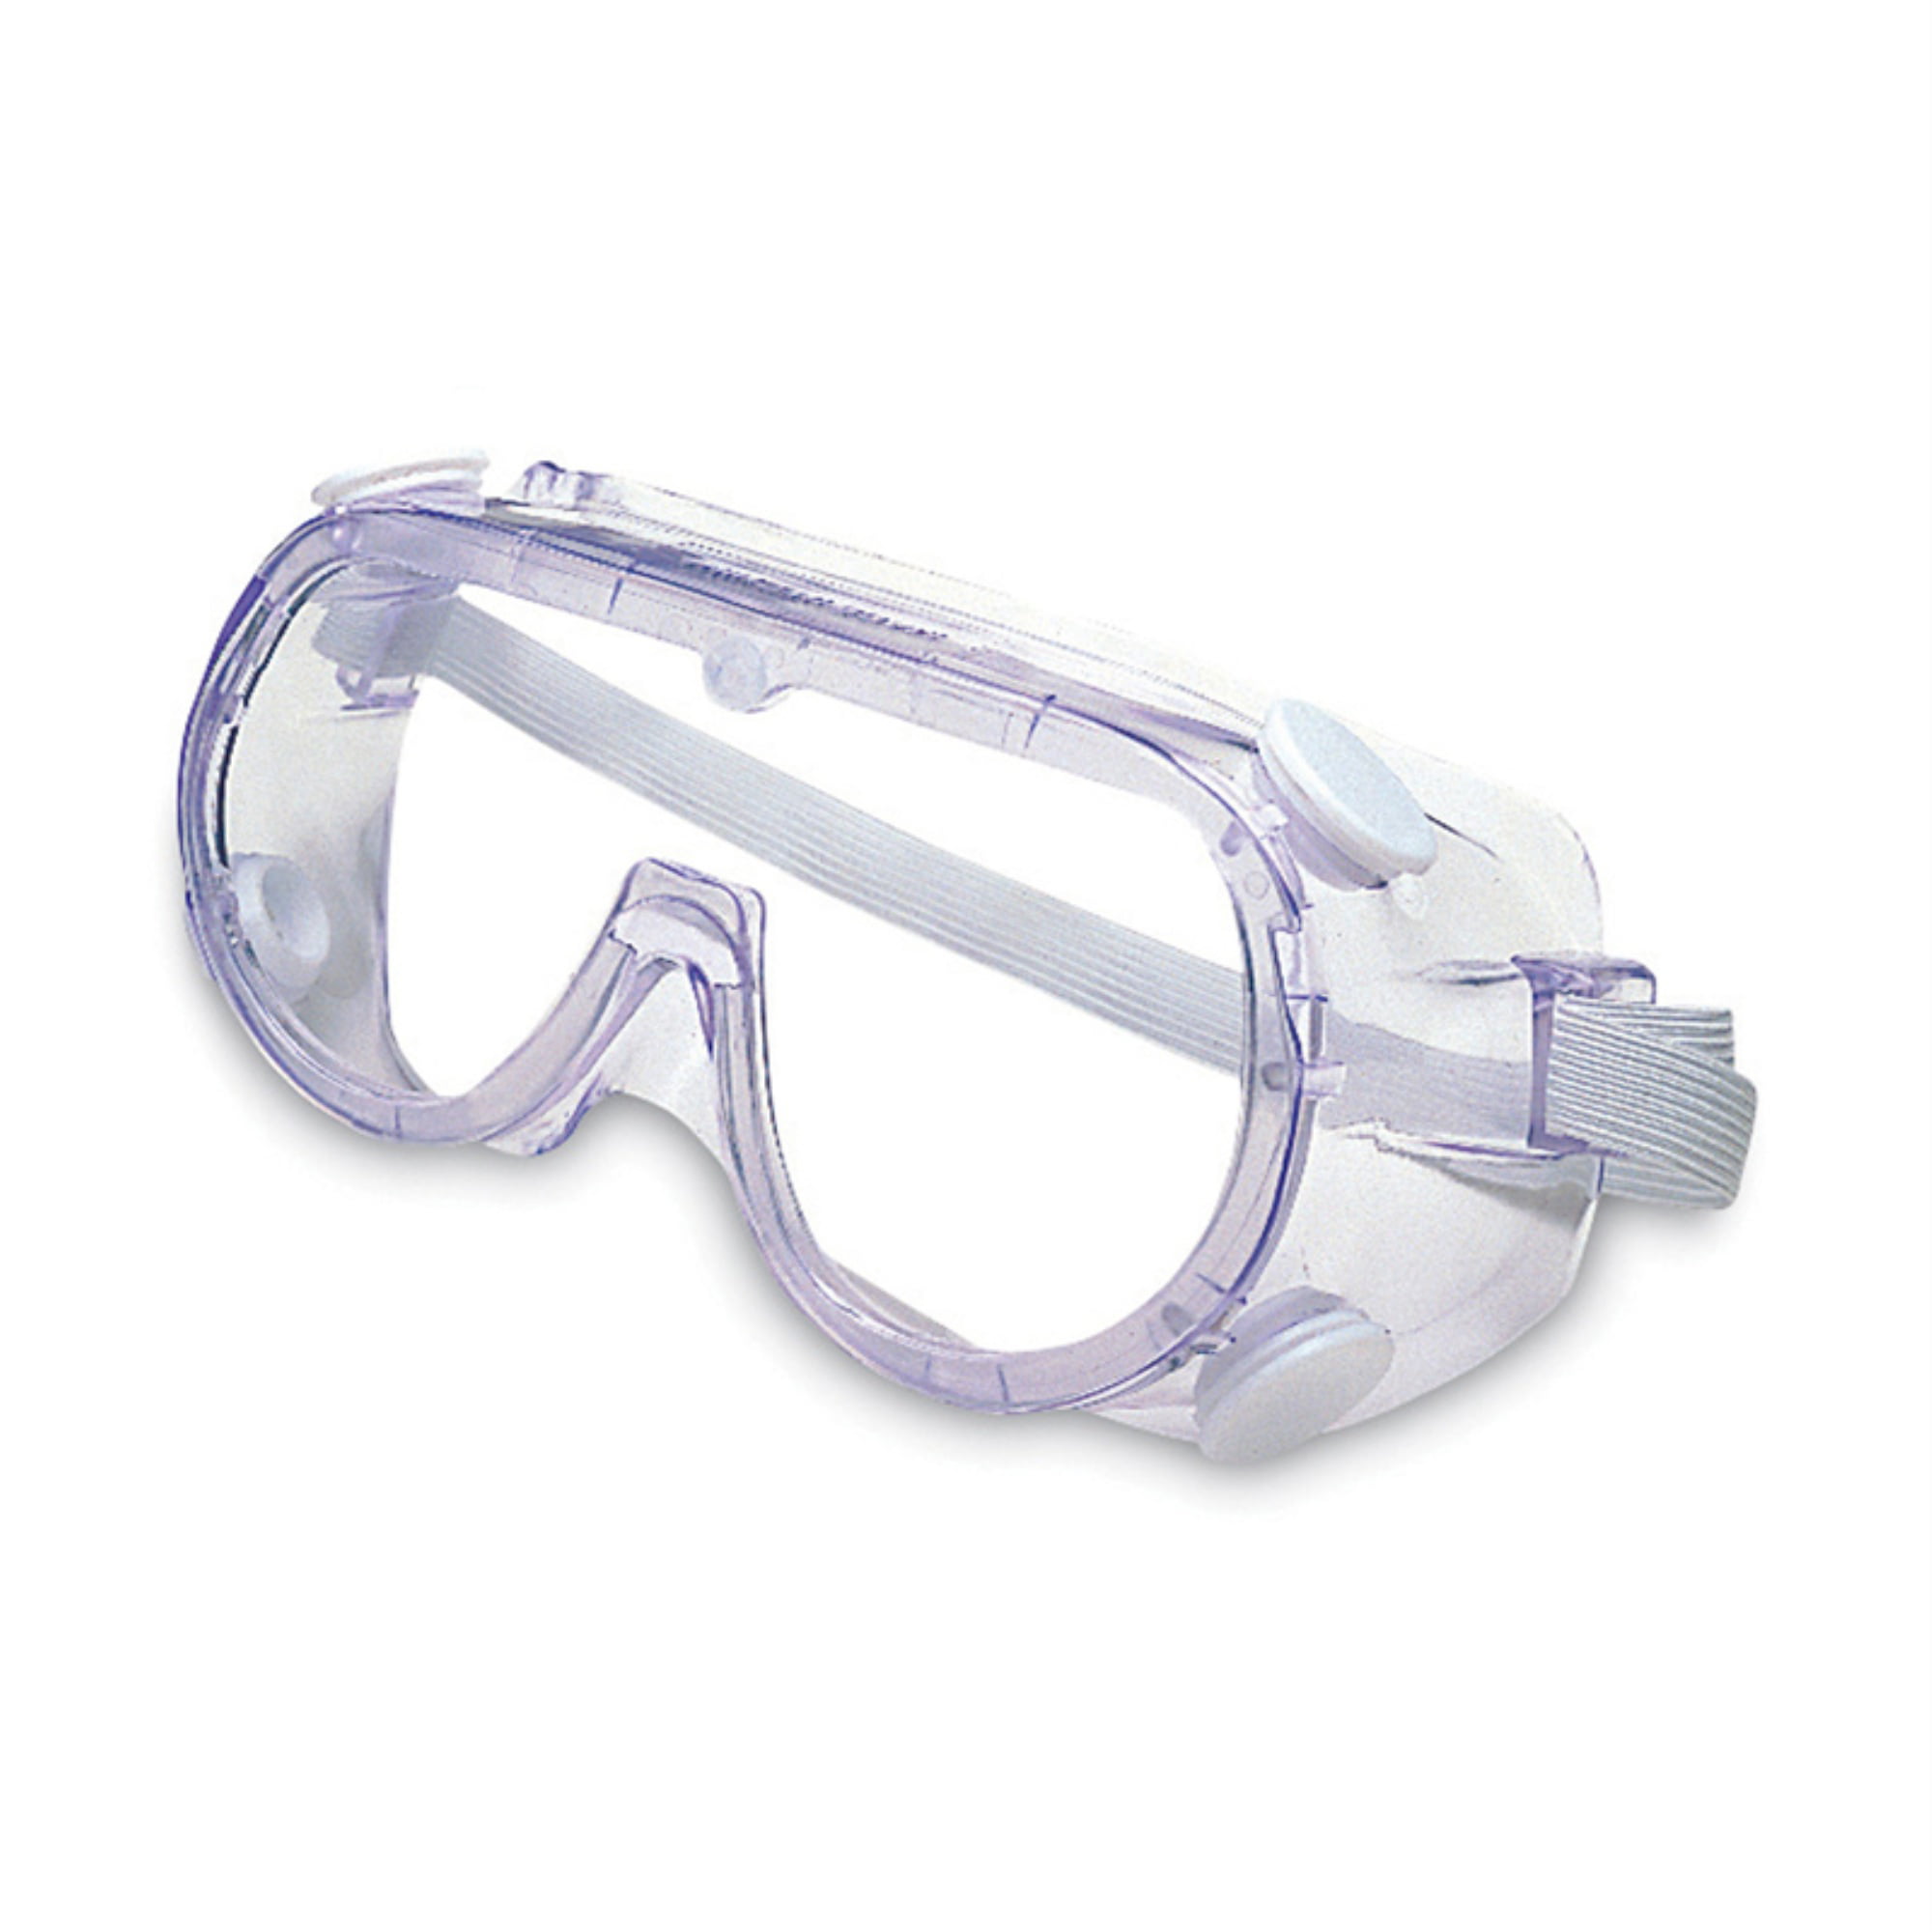 Химические защитные очки. Очки защитные темные Clear/ цветлые ANSI Z87.1. Очки защитные с прямой вентиляцией 89161. Очки защитные НМХ-02. Очки защитные с прямой вентиляцией стандарт (закрытые очк1403 синие).